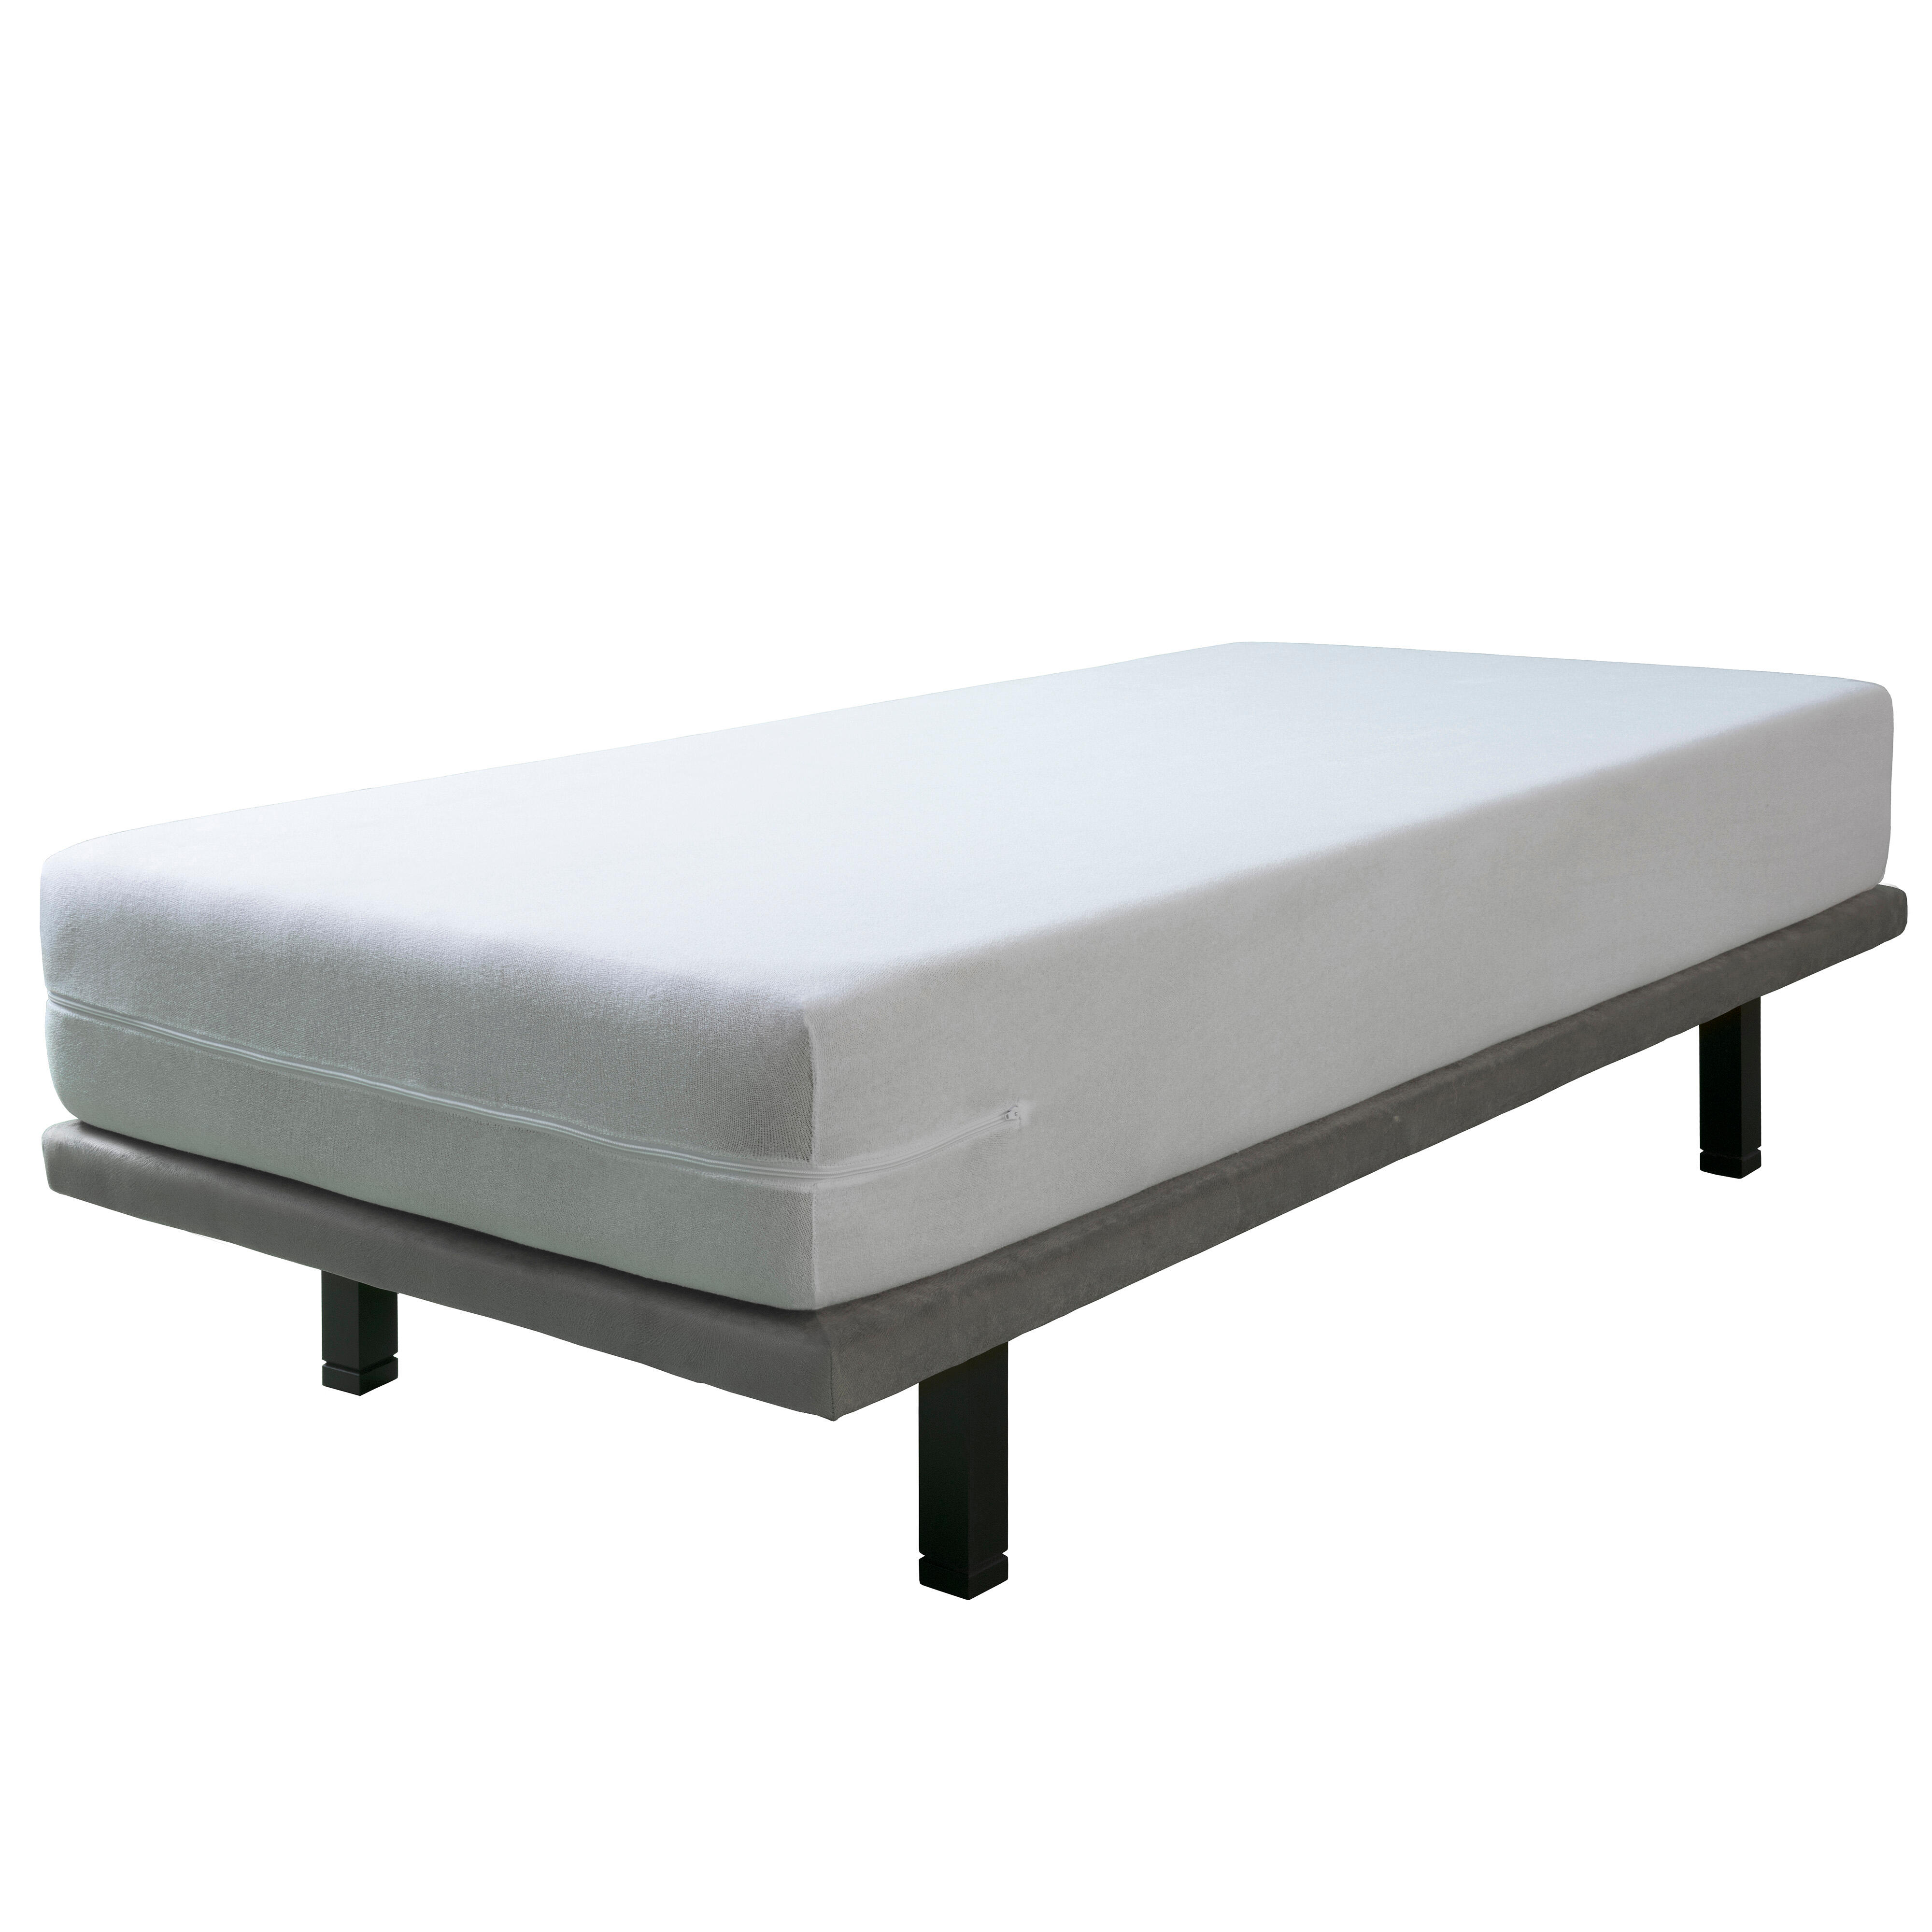 Funda de colchón rizo elástico tela algodón blanco para cama de 180 cm